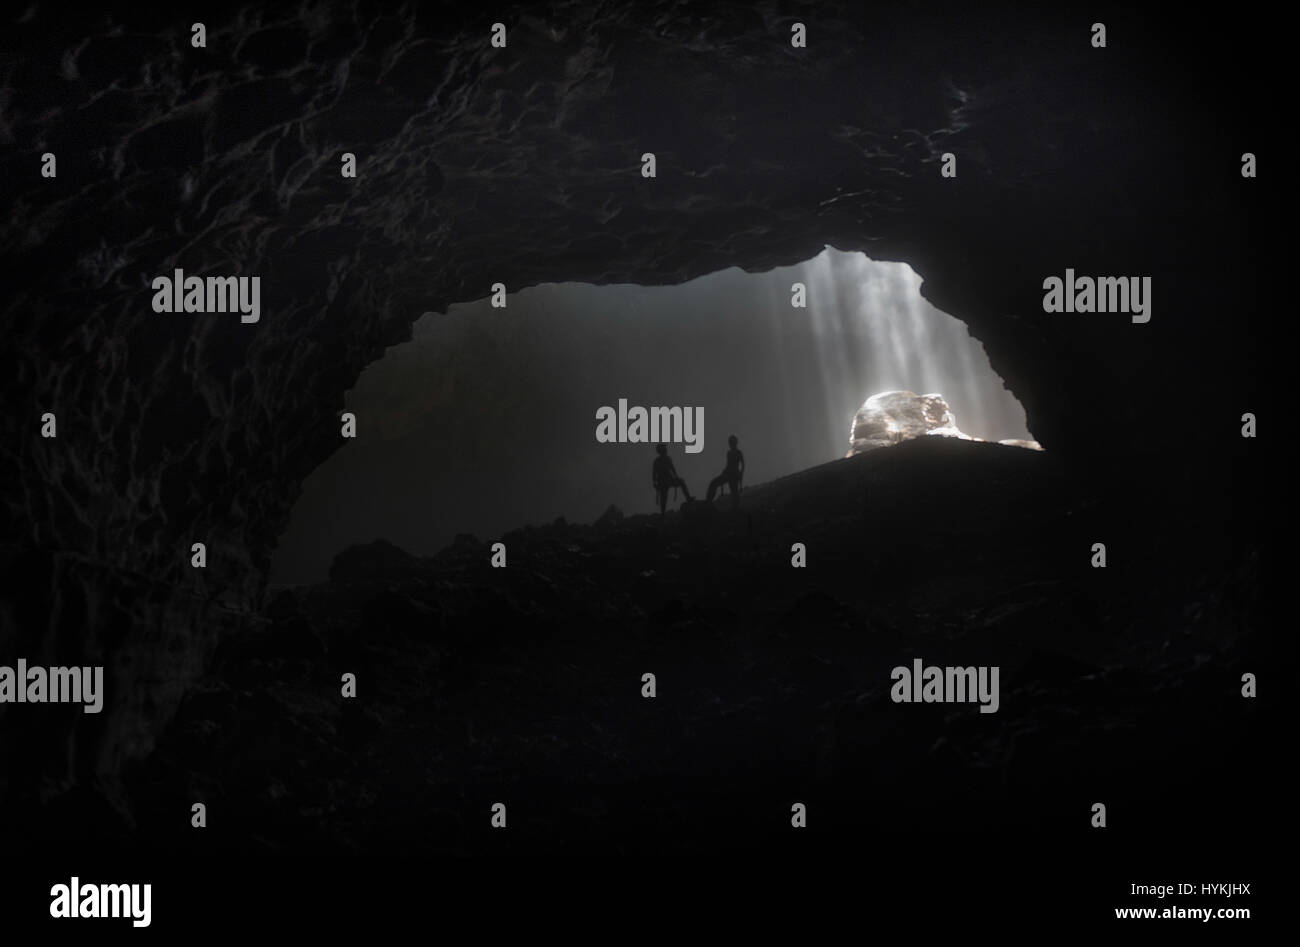 YOGYAKARTA, Indonesien: Unglaubliche Abseilen Bilder aus einer dreihundert Fuß hohe vertikale Höhle mit einer dunklen Geschichte wurden von Mann und Frau Team gefangen genommen. Bilder und Videos zeigen das Ausmaß des Aufstiegs in die schwarze Höhle, hervorgehoben durch Sonnenstrahlen, die durch den Mund der Höhle lugt. Das unheimliche Abseilen in die schwarzen fand in Indonesiens Jomblang Höhle, synchronisierte Massaker Höhle aufgrund seiner schrecklichen Vergangenheit wo in 1965 Hunderte von Mitgliedern der PKI, kommunistische Partei von Indonesien, wurden angeblich und massakriert.  Geschichten rund um diese Höhle noch spuken die Dorfbewohner ein Stockfoto